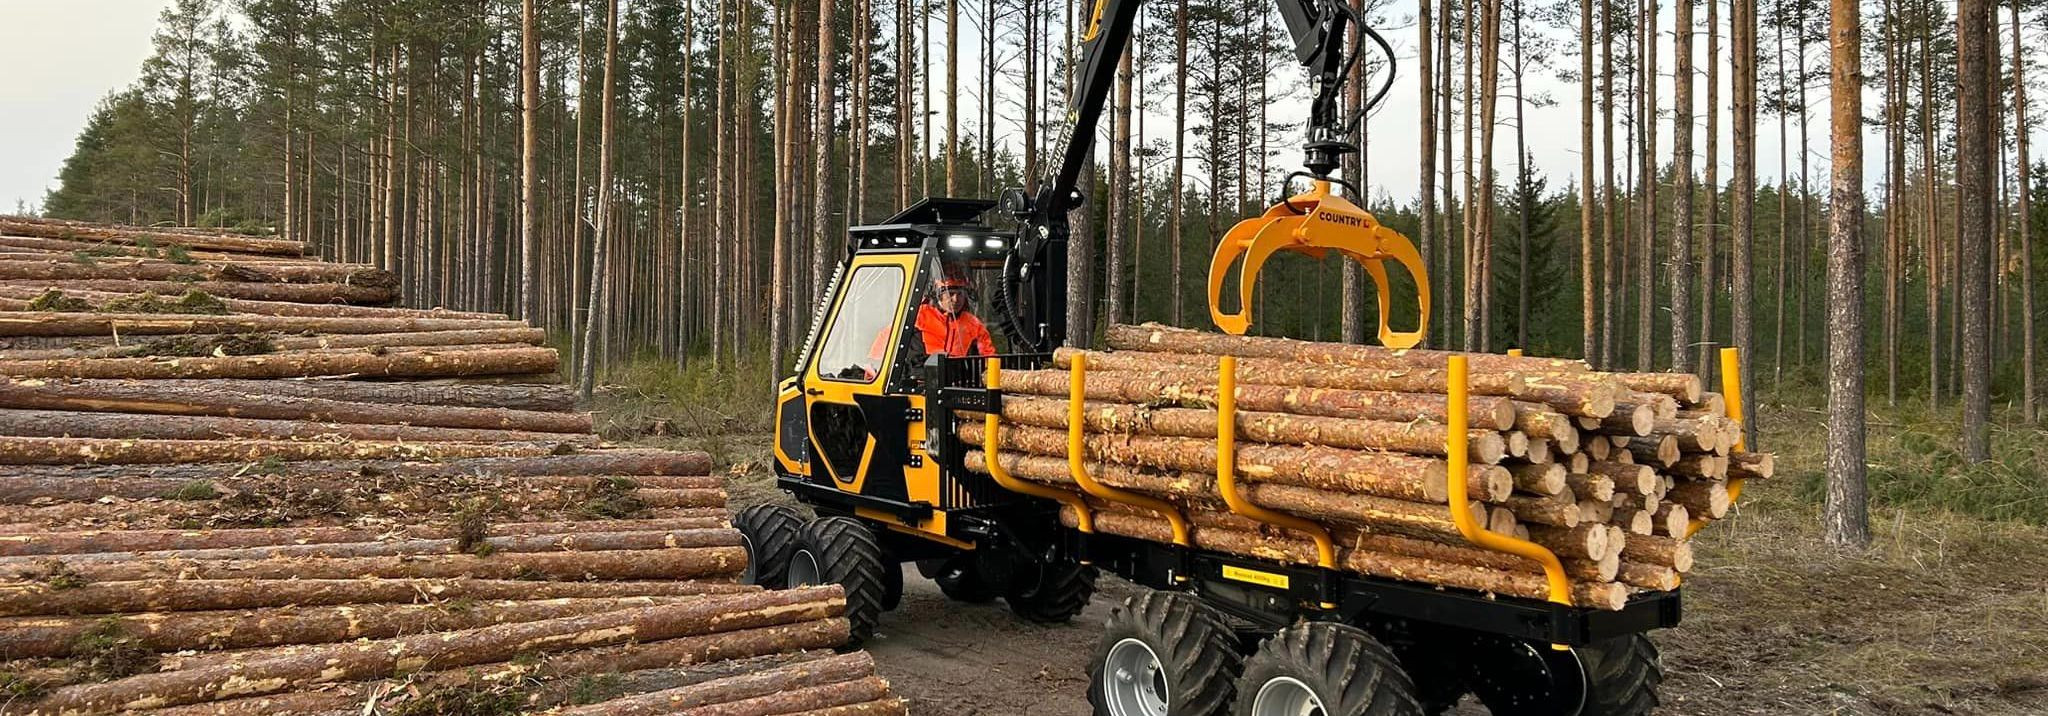 Mõned lihtsad sammud, kuidas tagada metsandusmasinate tipptasemel toimimine.   Regulaarne Puhastamine   Alustage lihtsalt - regulaarne puhastamine. Eemaldage mu